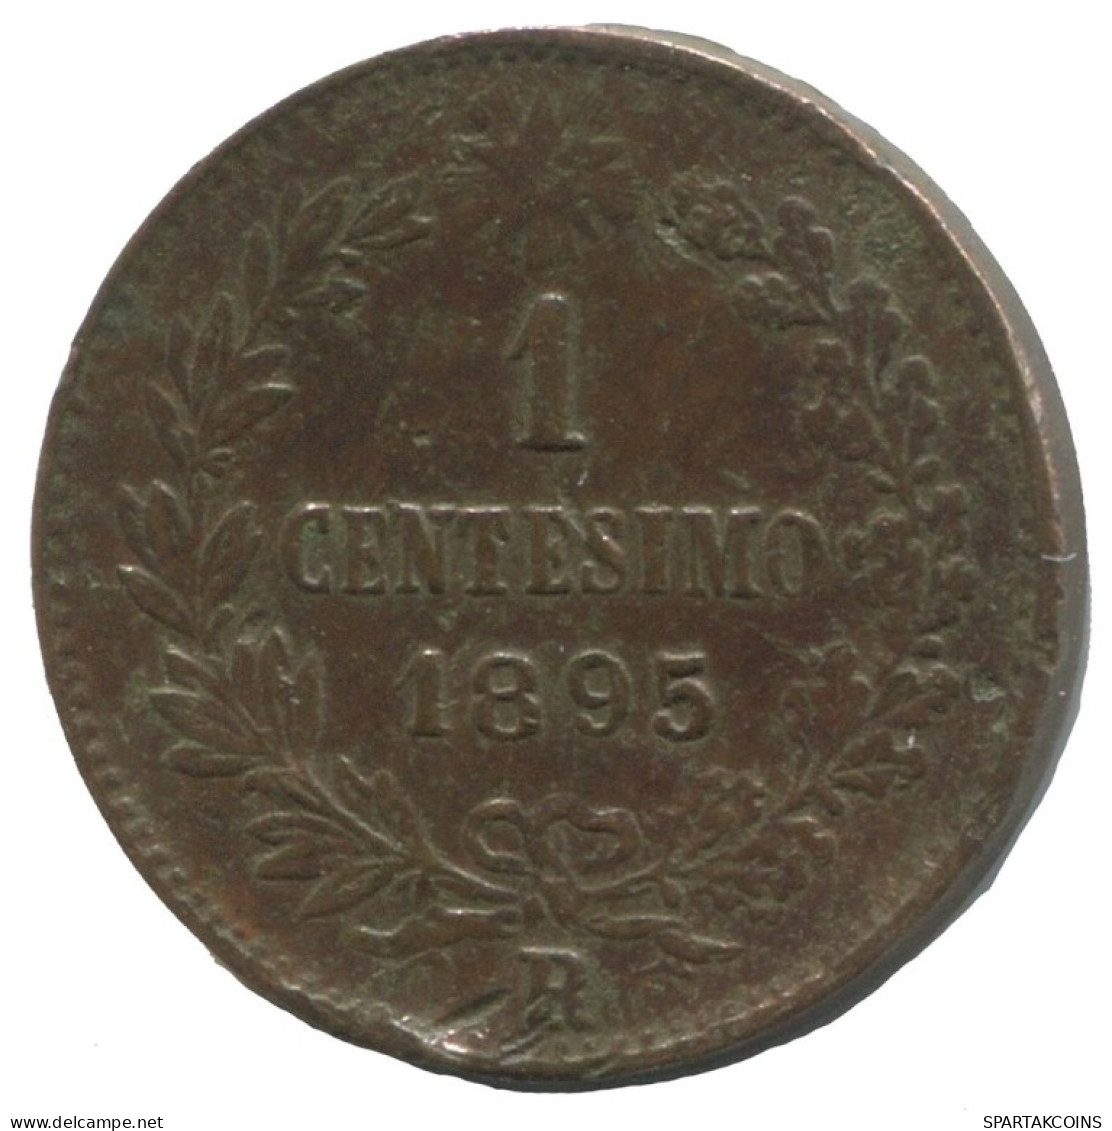 ITALY 1 Centesimo 1895 R Umberto I #AC186.8.F.A - Parma